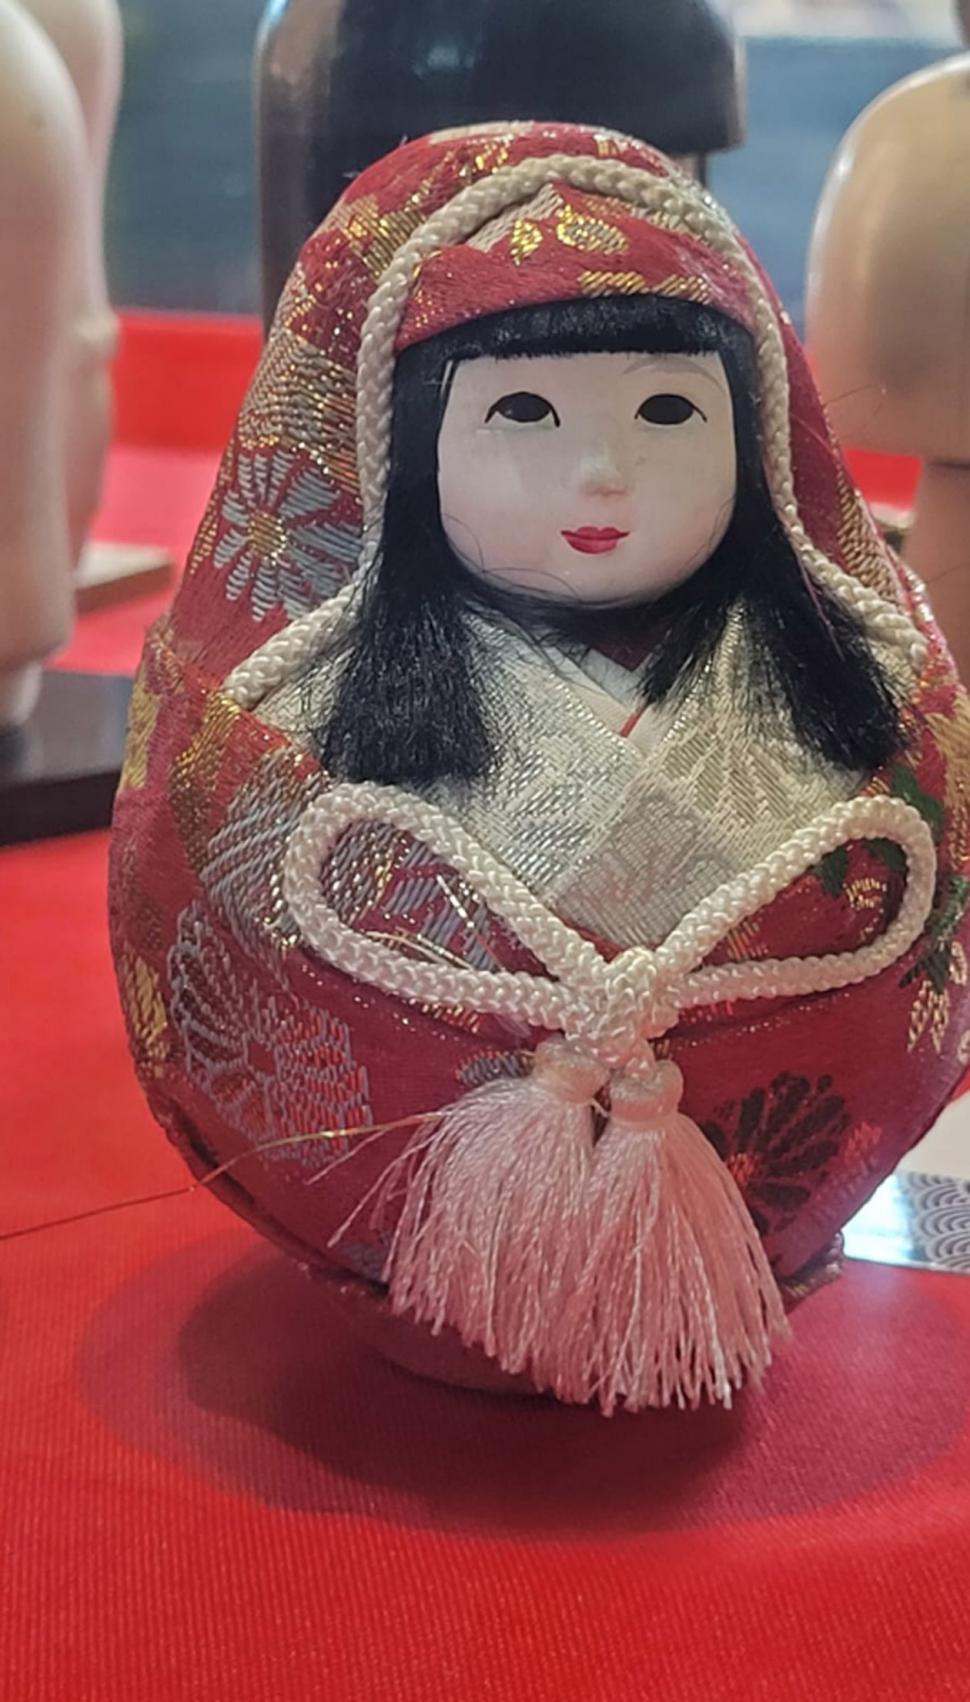 ORIGAMI. El arte de doblar papel surgió en China y luego llegó a Japón.